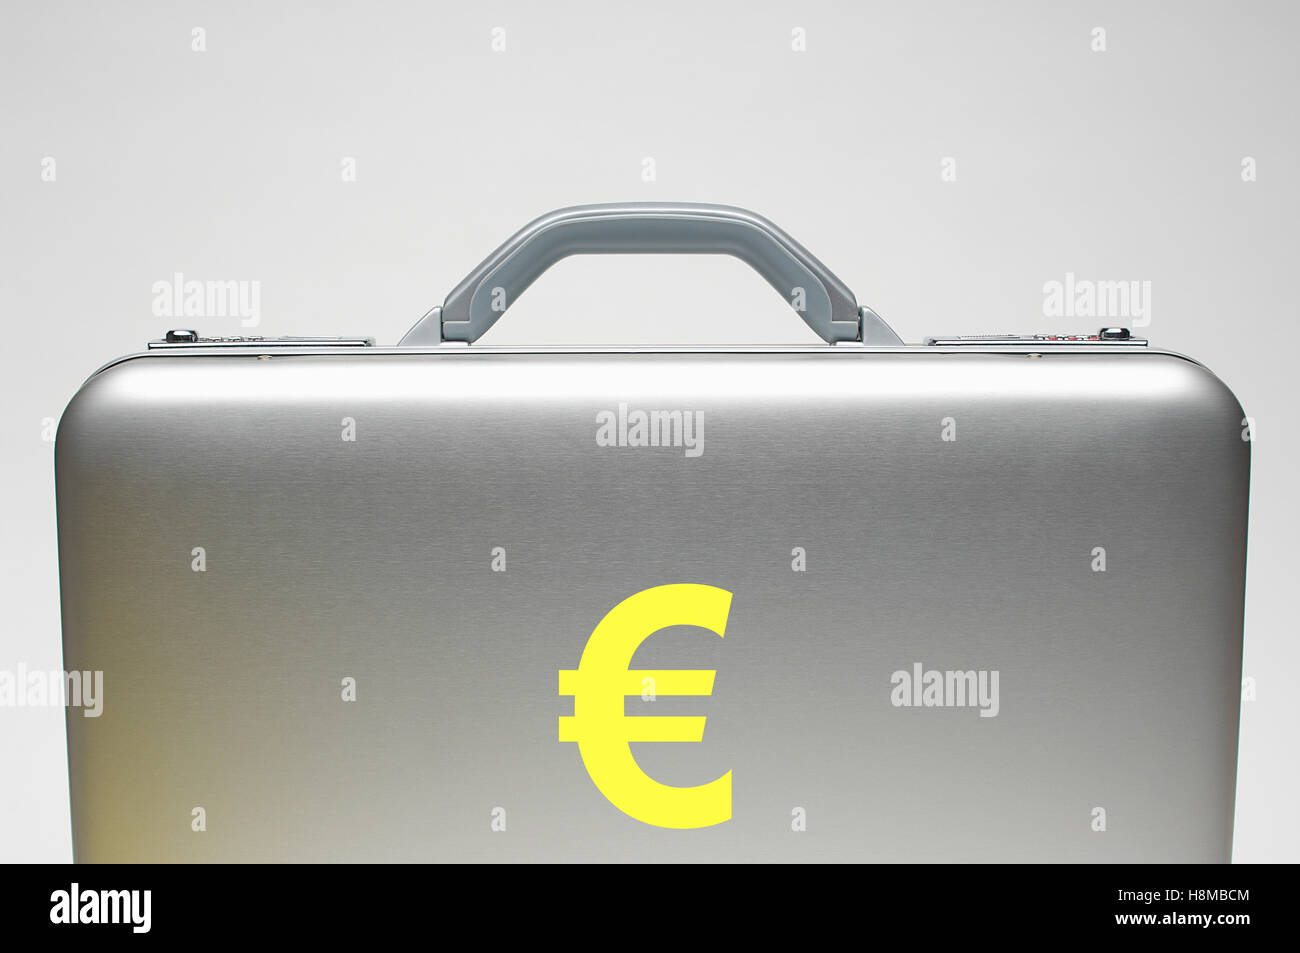 Euro briefcase Stock Photo